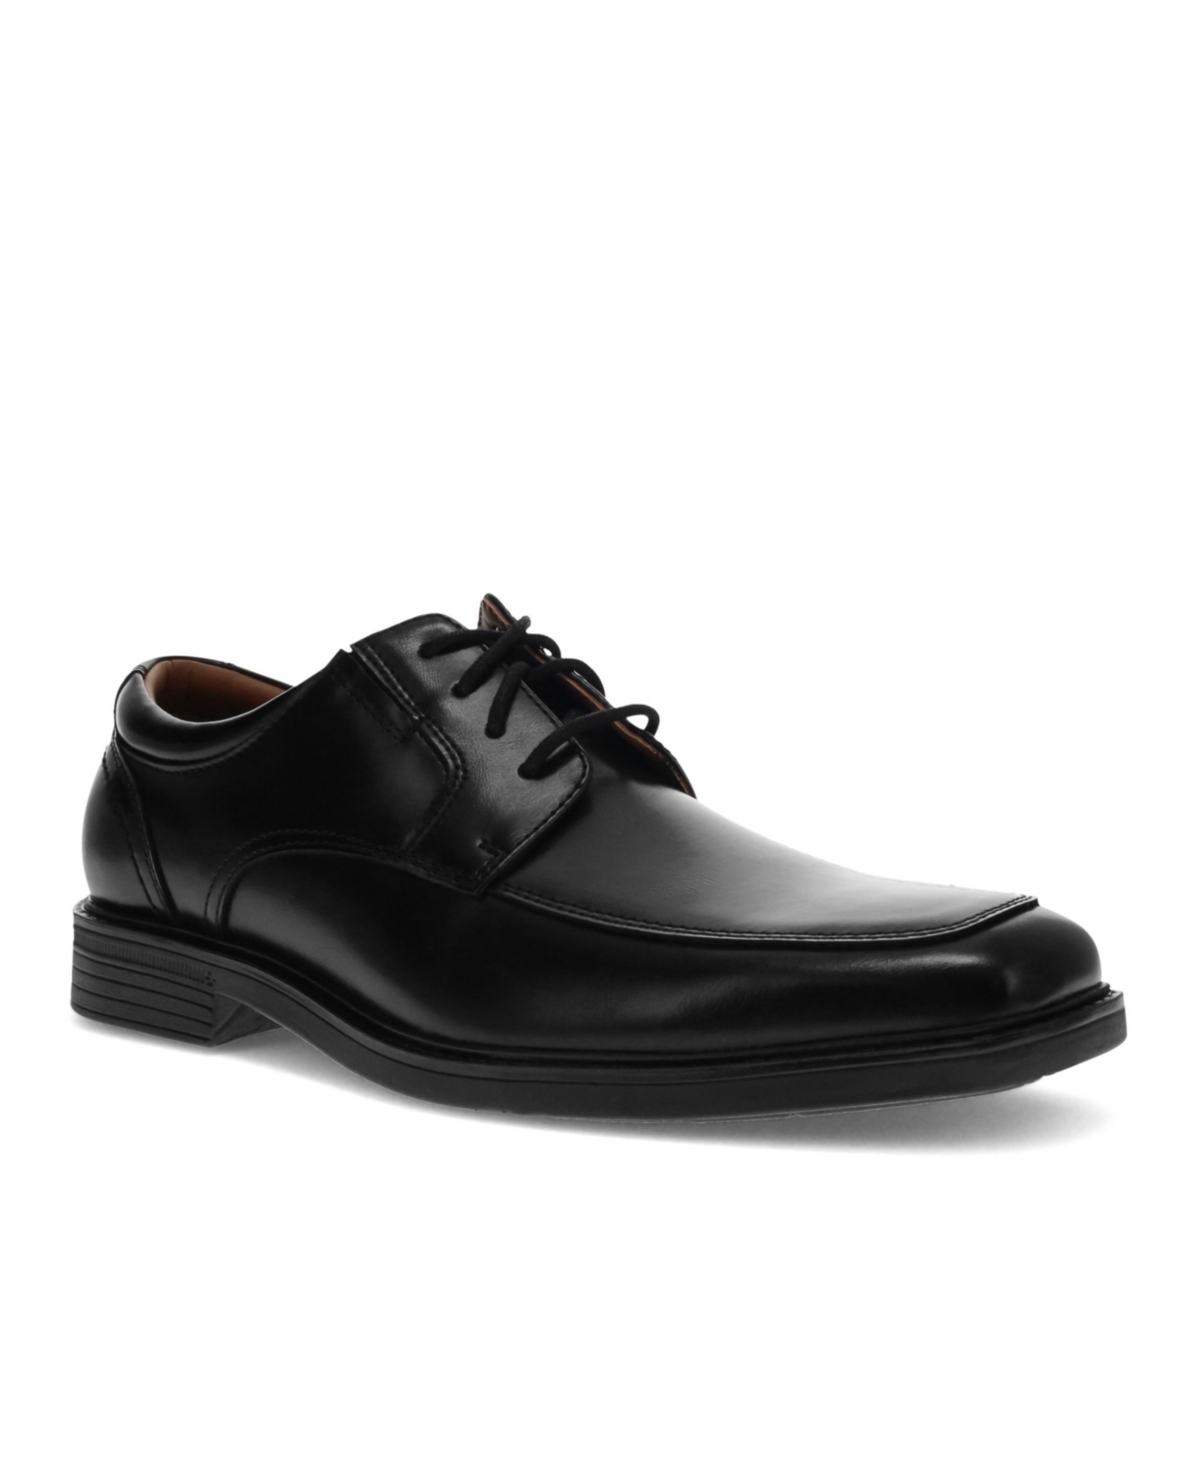 Men's Simmons Oxford Shoes - Black